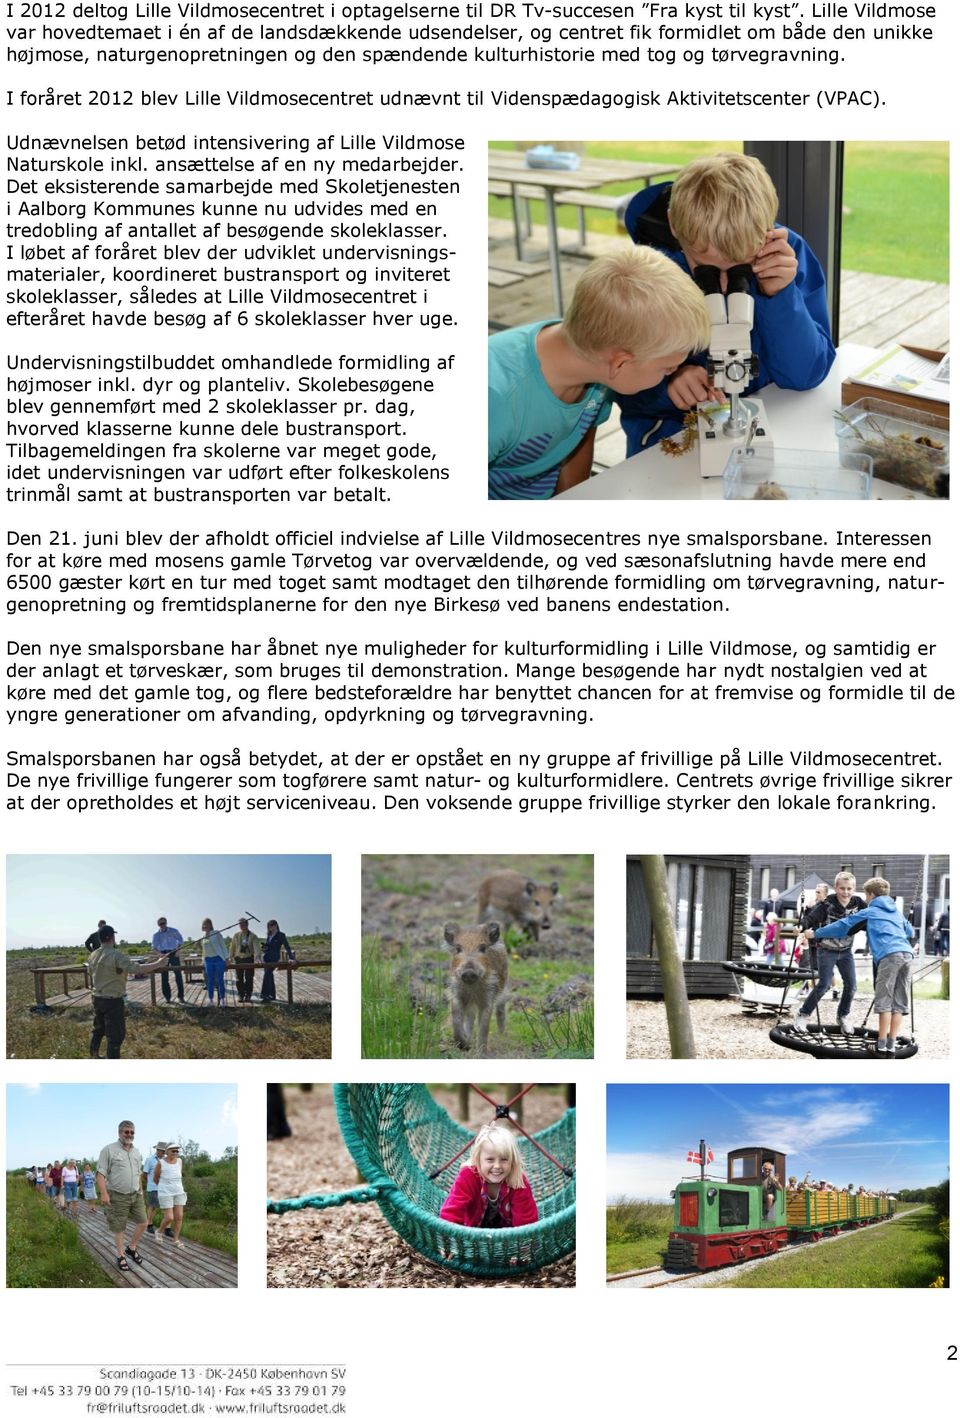 I foråret 2012 blev Lille Vildmosecentret udnævnt til Videnspædagogisk Aktivitetscenter (VPAC). Udnævnelsen betød intensivering af Lille Vildmose Naturskole inkl. ansættelse af en ny medarbejder.